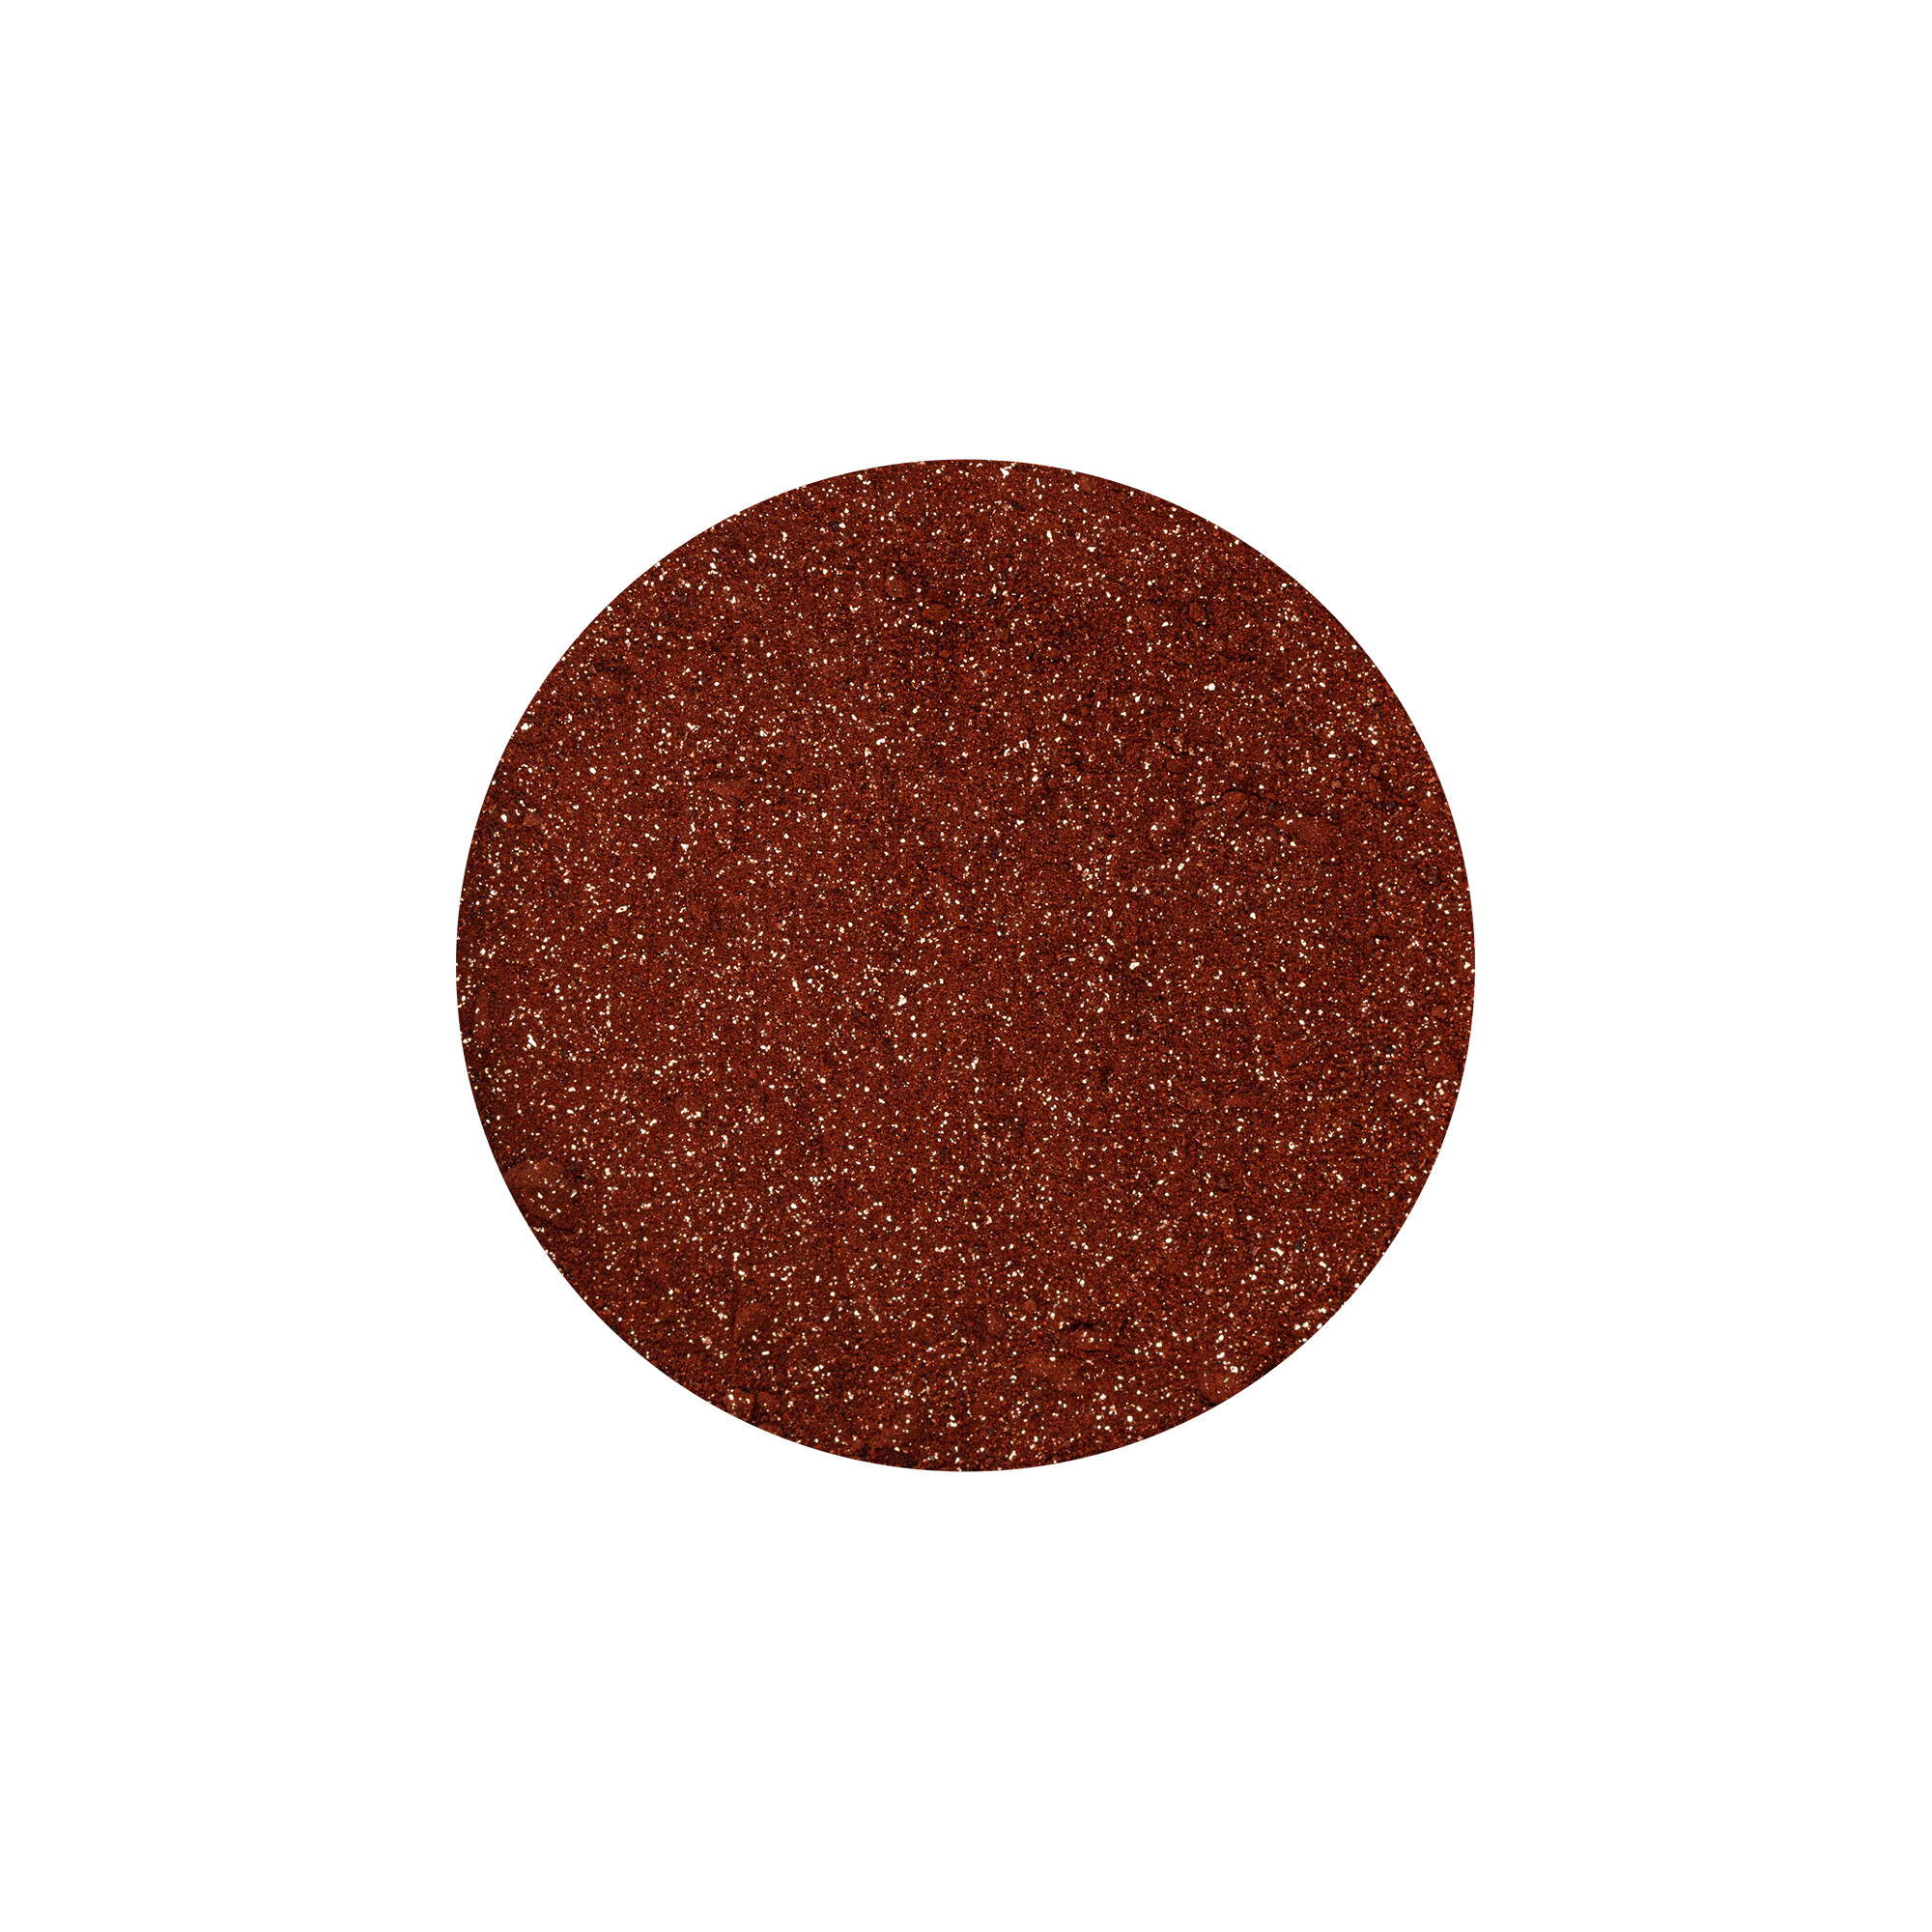 Edible sprinkle decoration – Diamond Dust cacoa